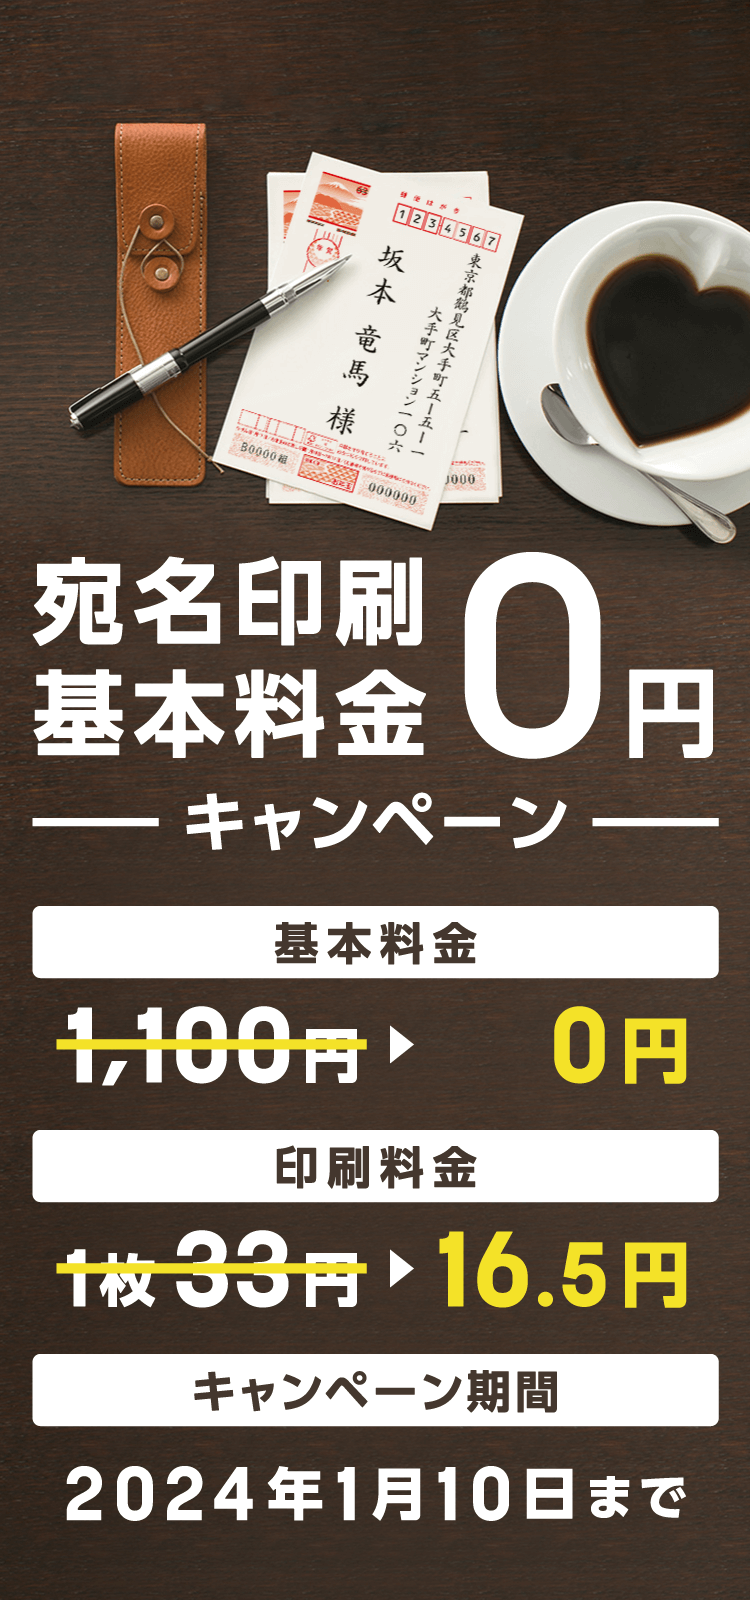 宛名印刷基本料金0円キャンペーン